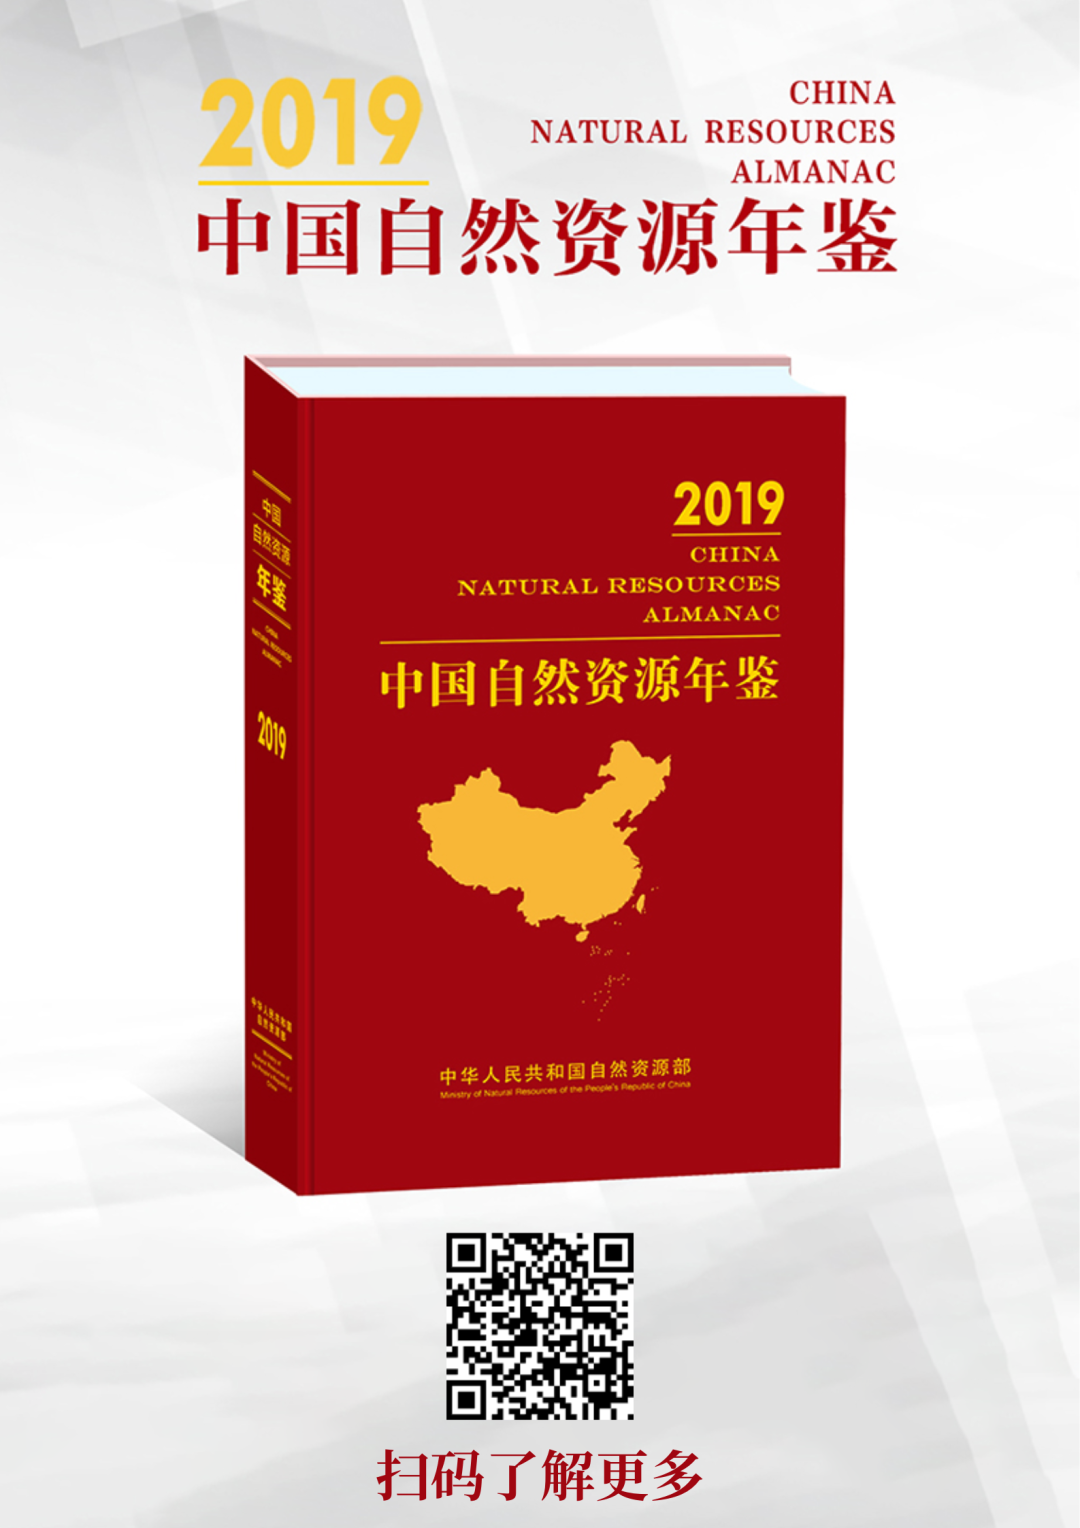 中国自然资源年鉴》（2019年卷） - 中国测绘学会官网